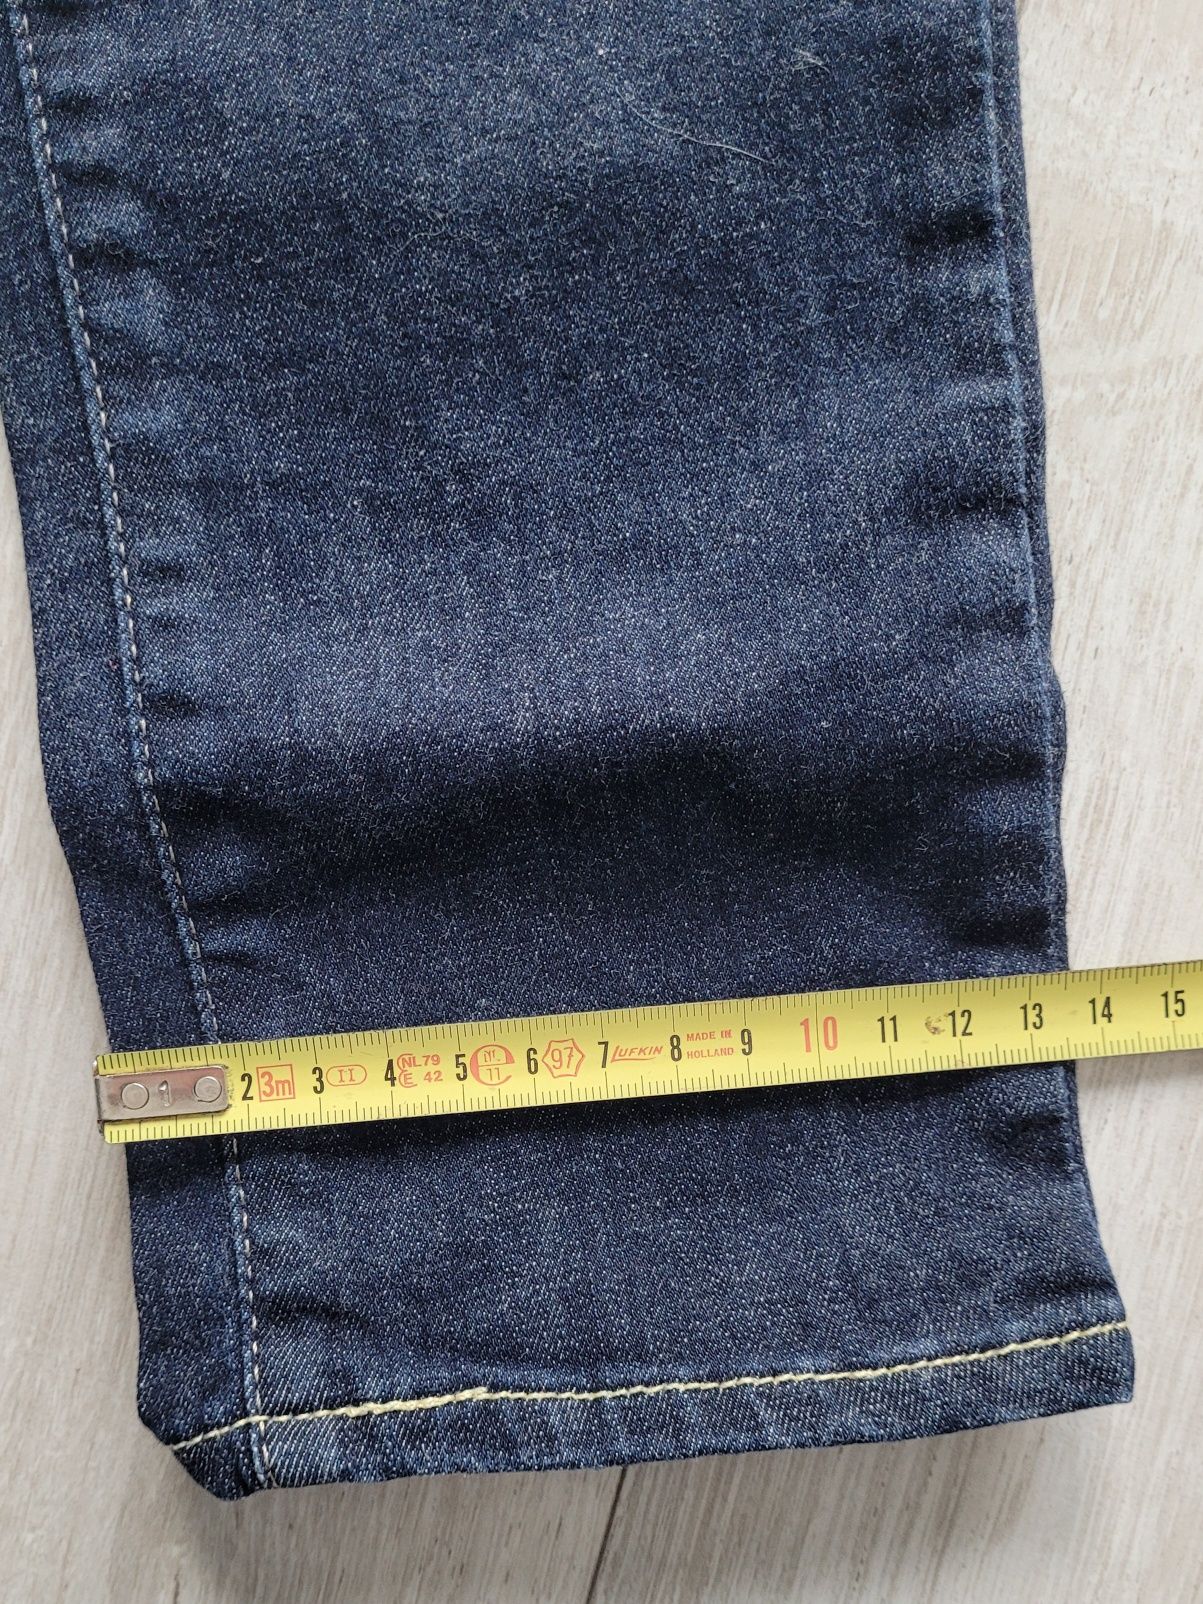 Spodnie, Jeansy Levi's rozmiar 25